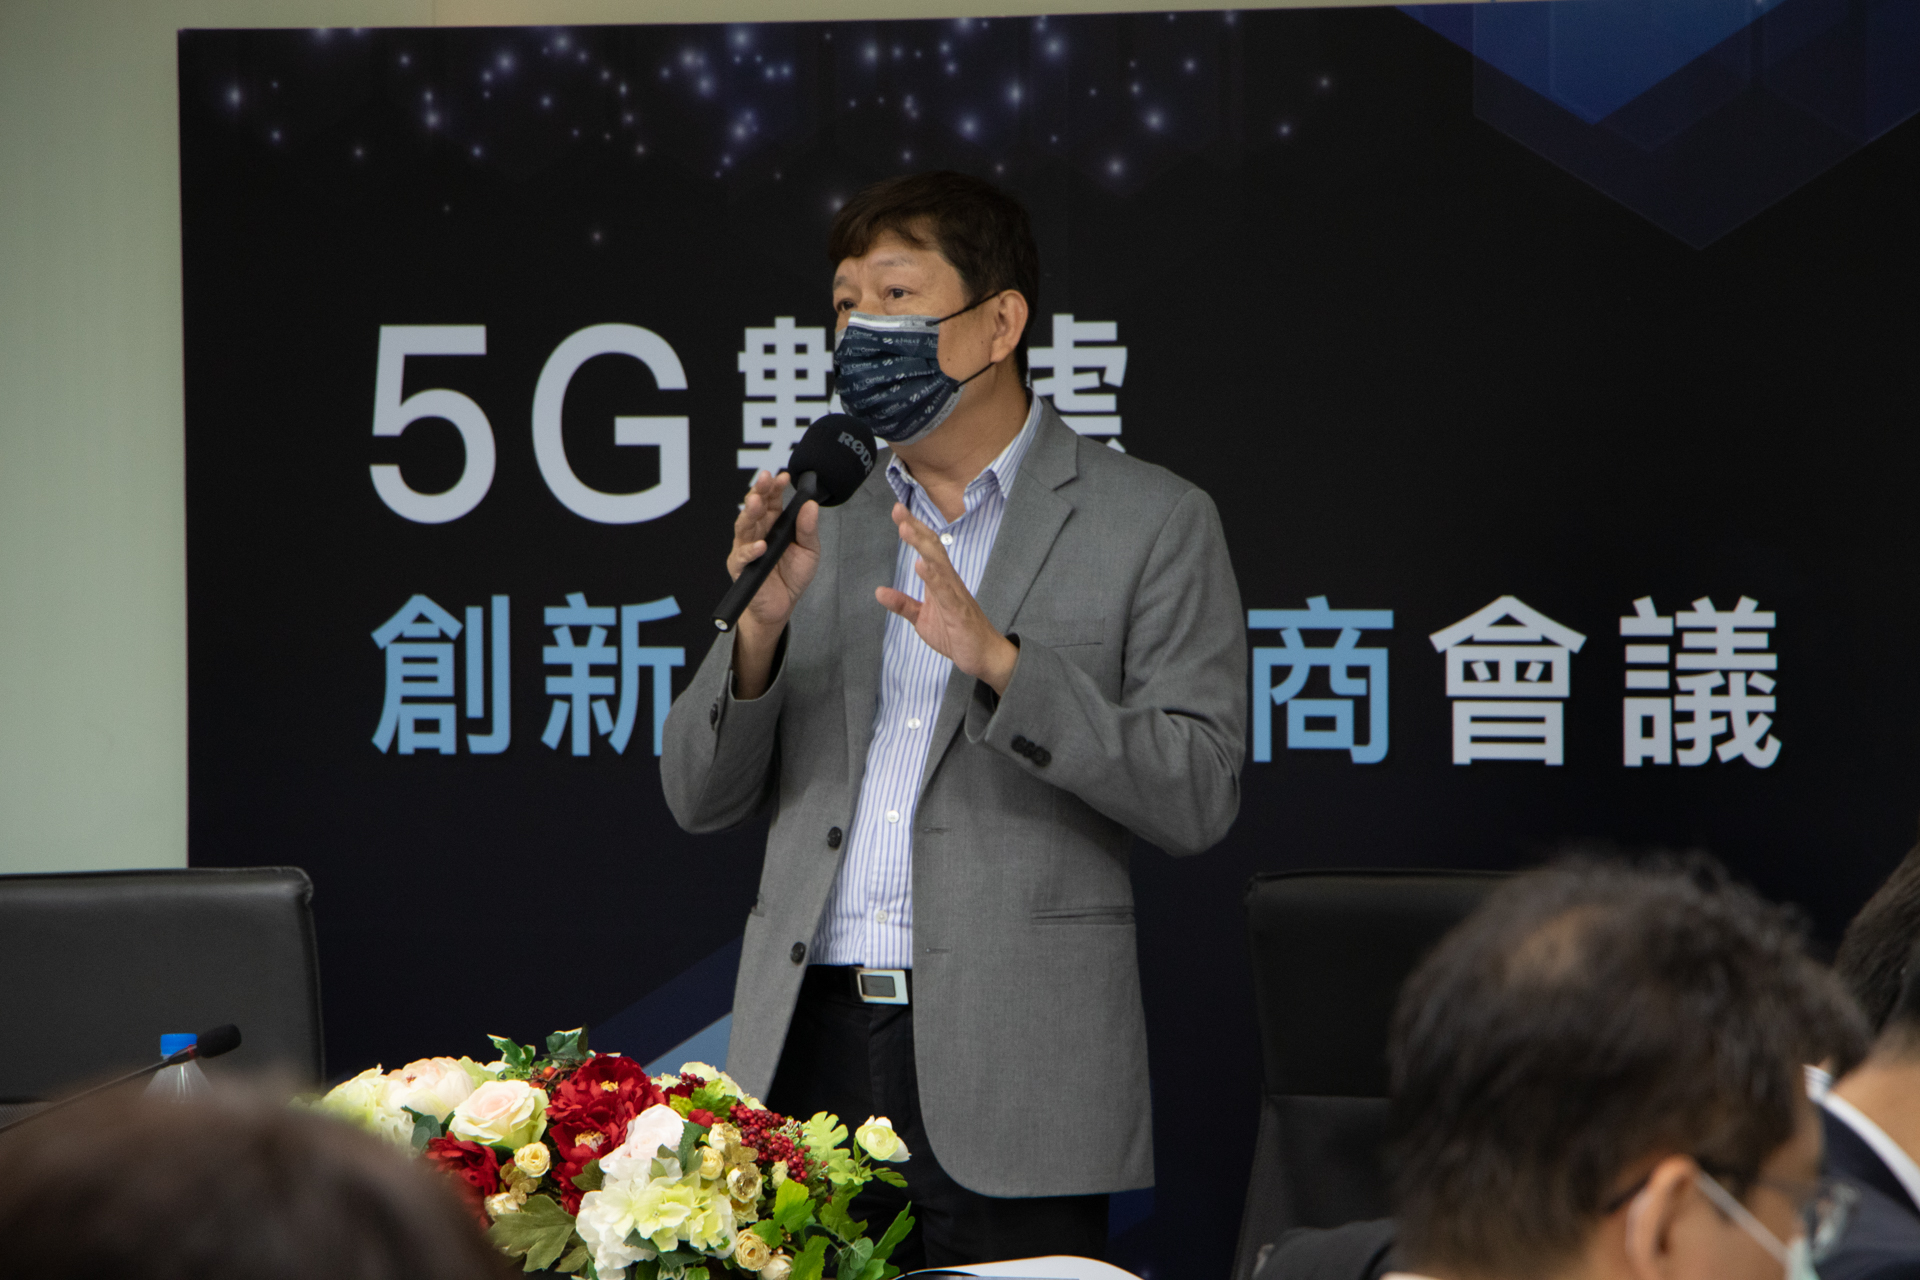 南臺科大、資策會與臺南市政府合辦諮商會議 邀產官學討論5G應用